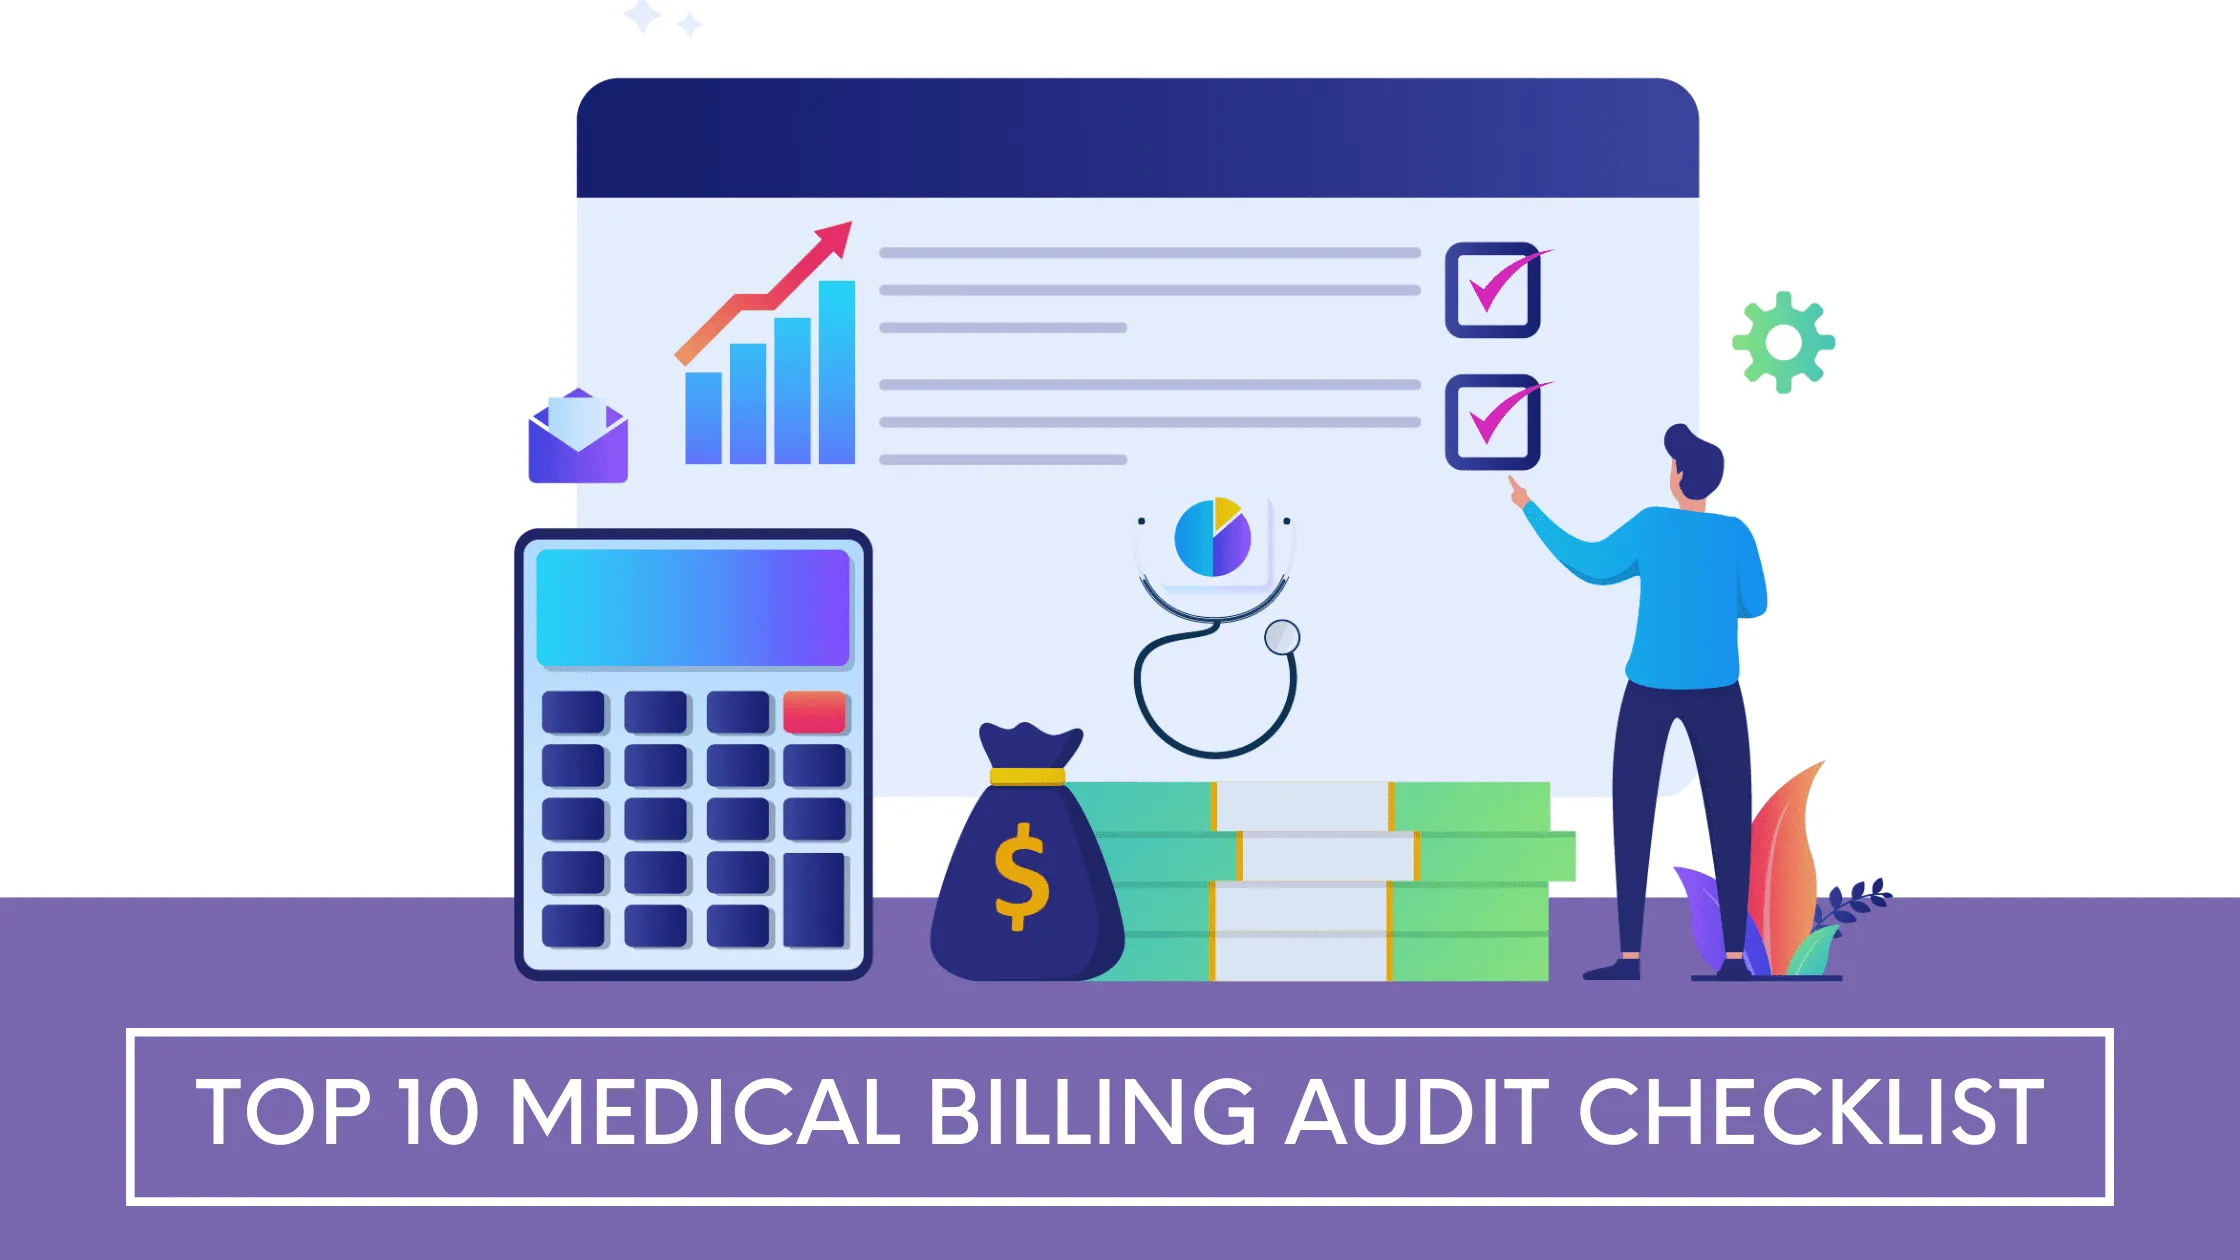 10 Key Points for Medical Billing Audits